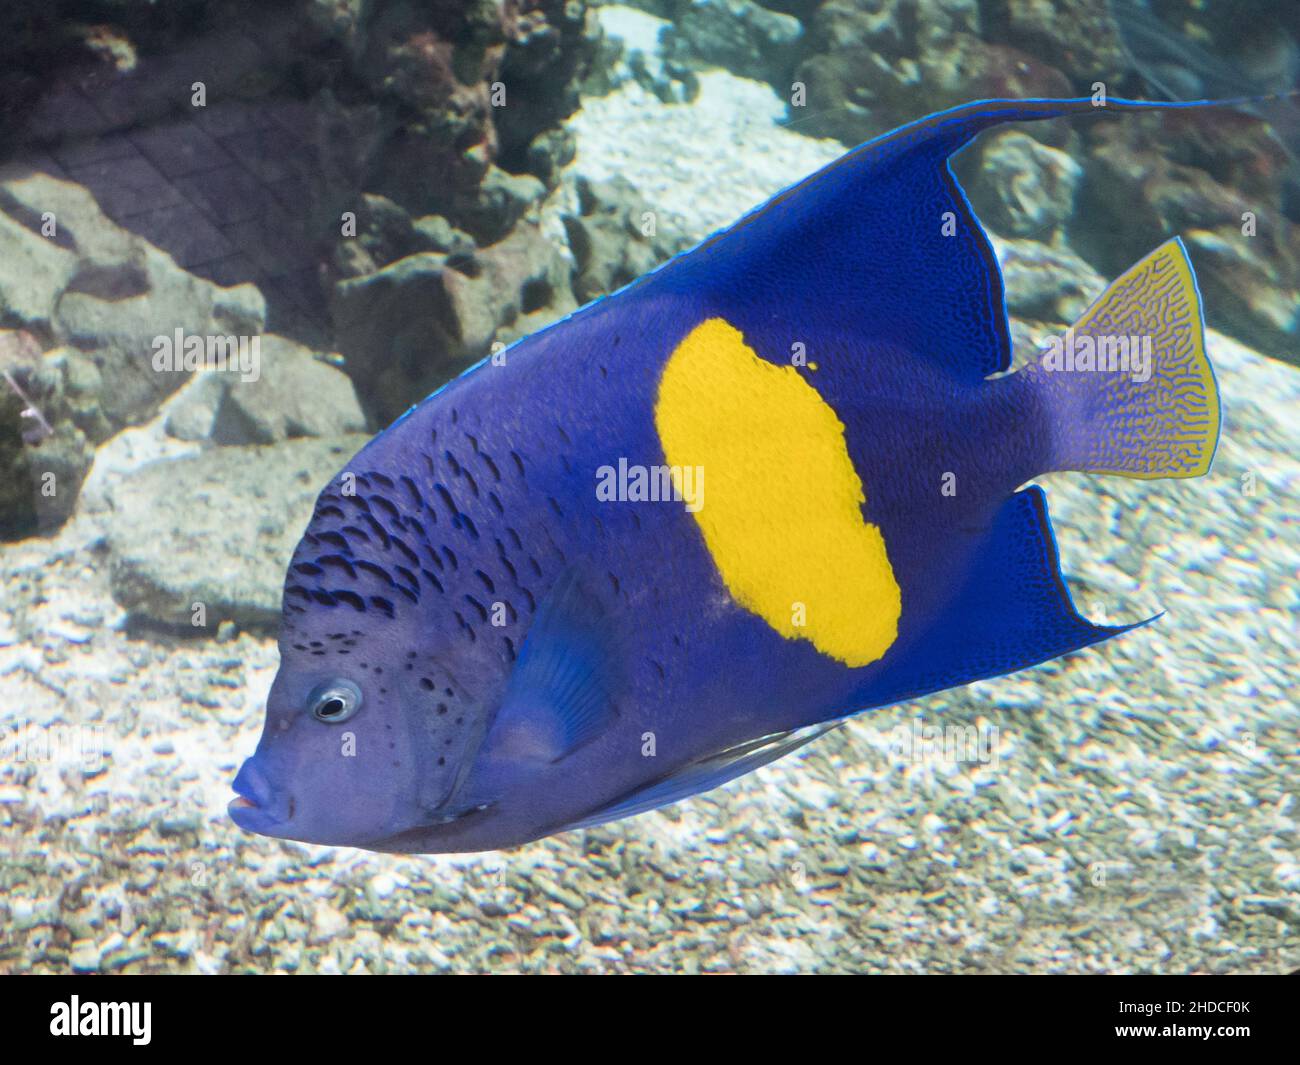 Arabischer Kaiserfisch, Pomacanthus maculosus / Halfmoon Angelfish, Pomacanthus maculosus Stock Photo